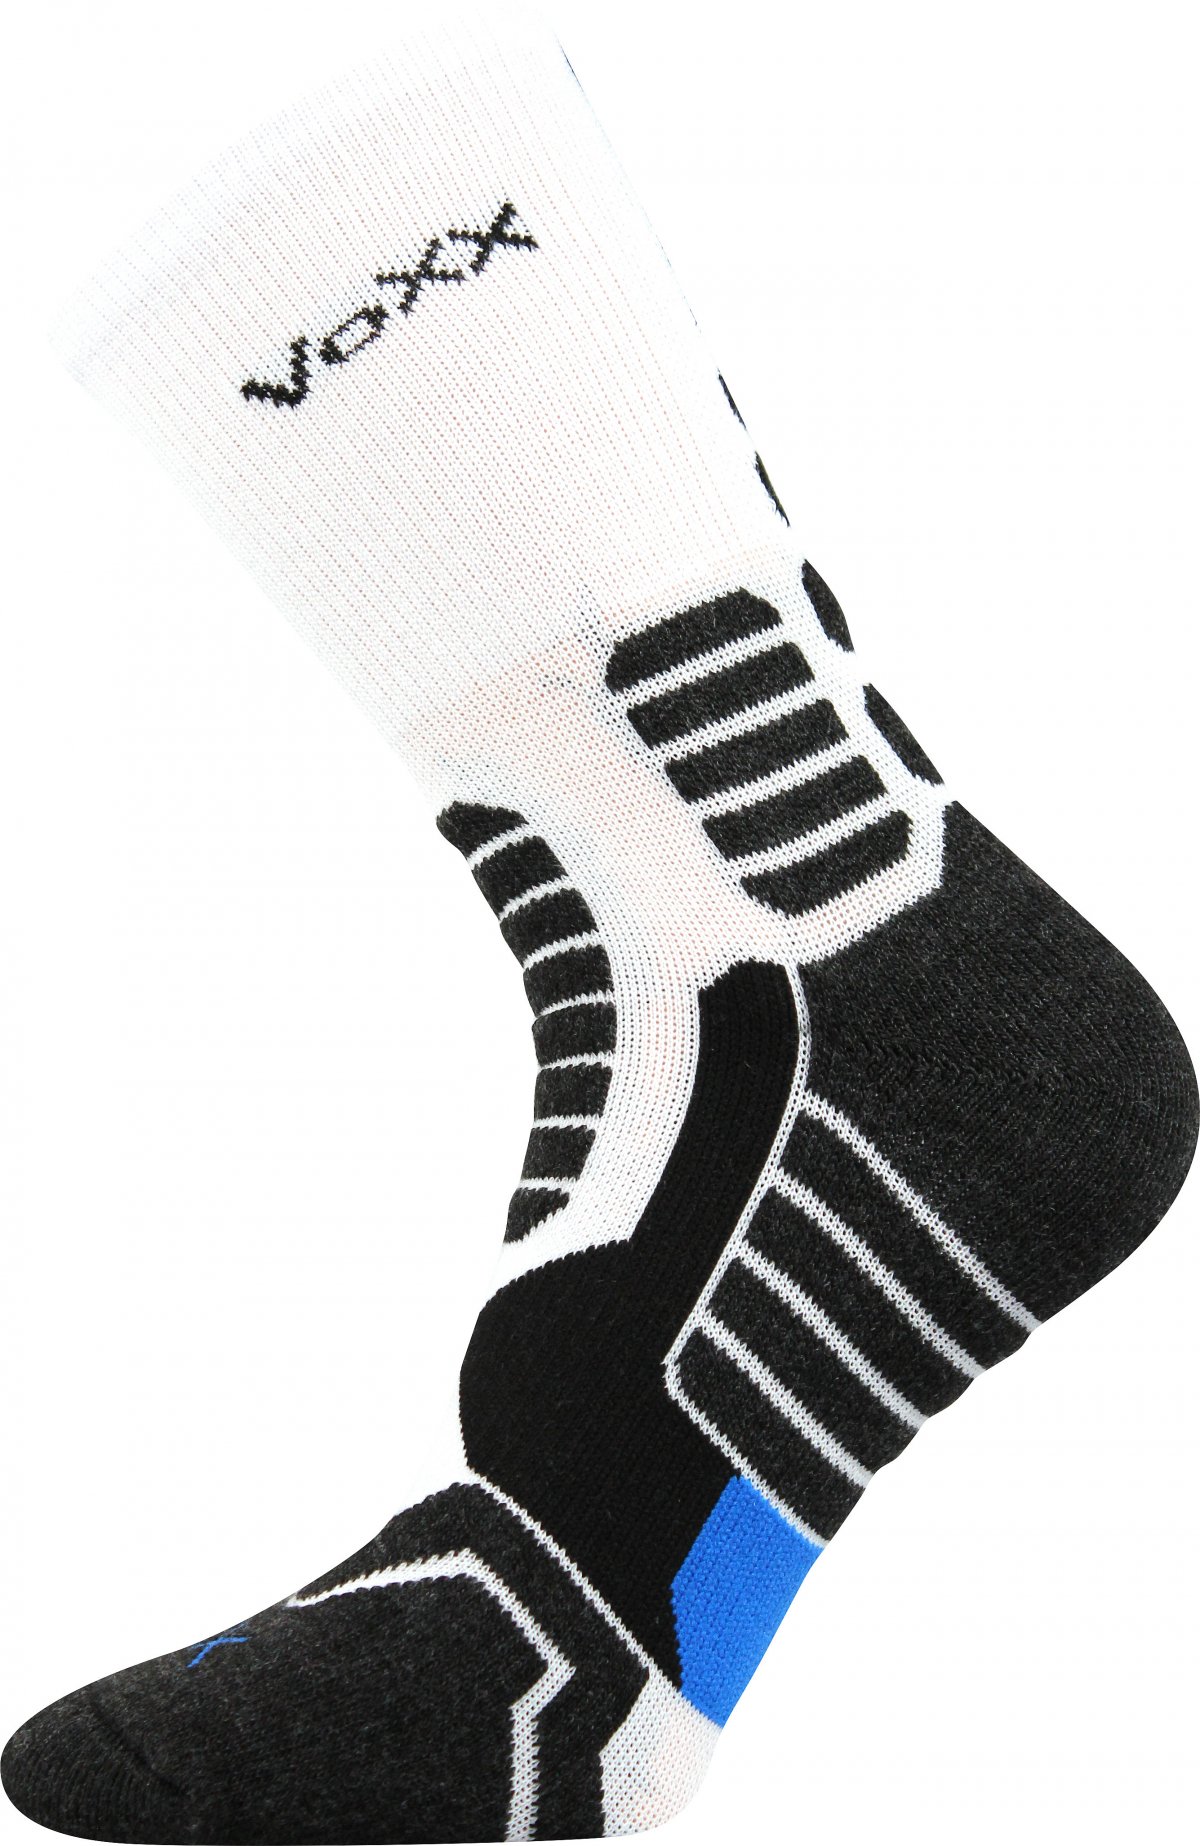 Kompresní ponožky Ronin - bílé - 1 pár - VoXX - velikost 39-42